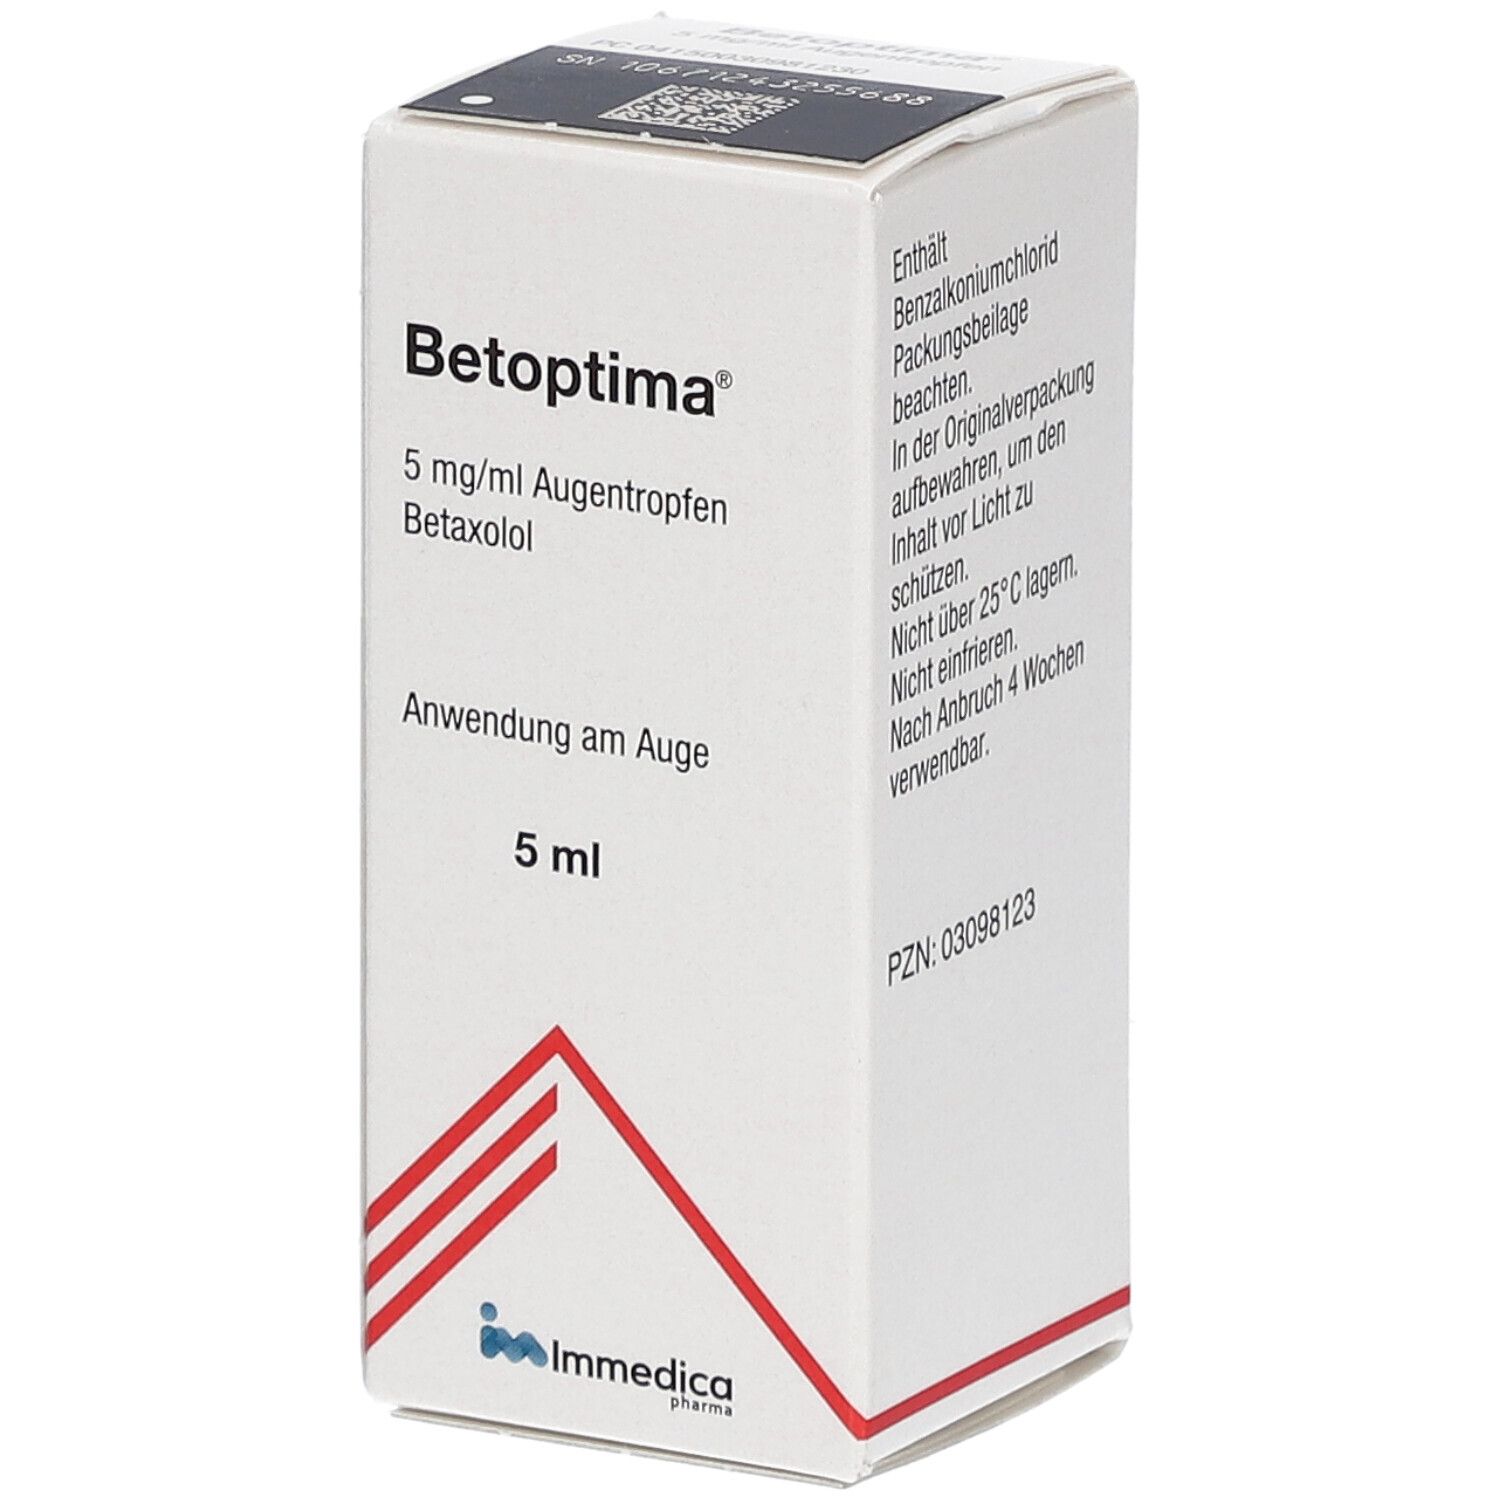 Betoptima® 5 mg/ml